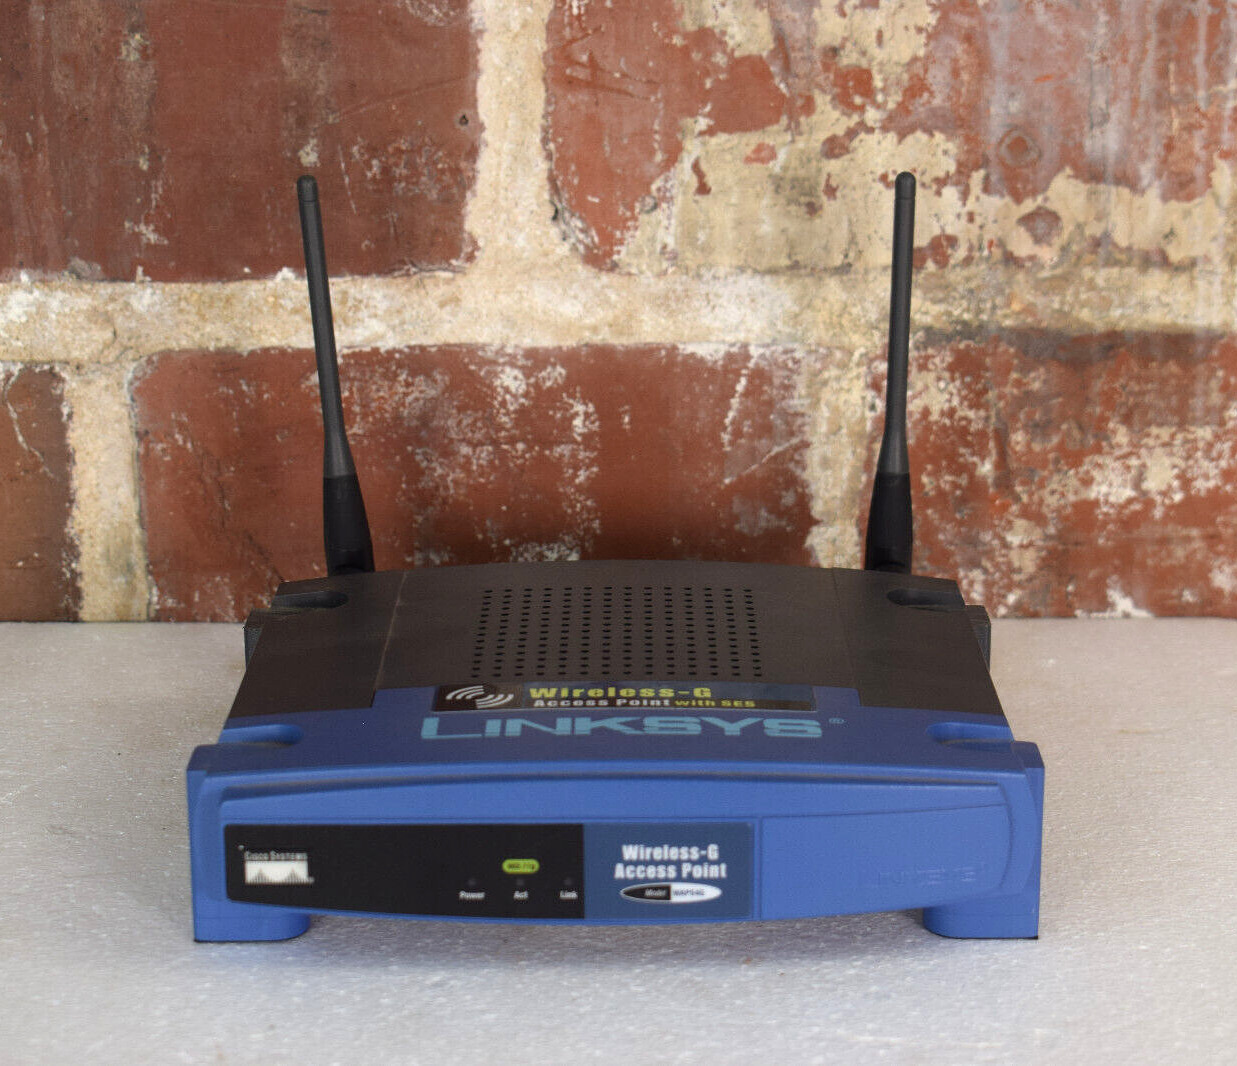 Linksys WAP54G Wireless-G Access Point Router